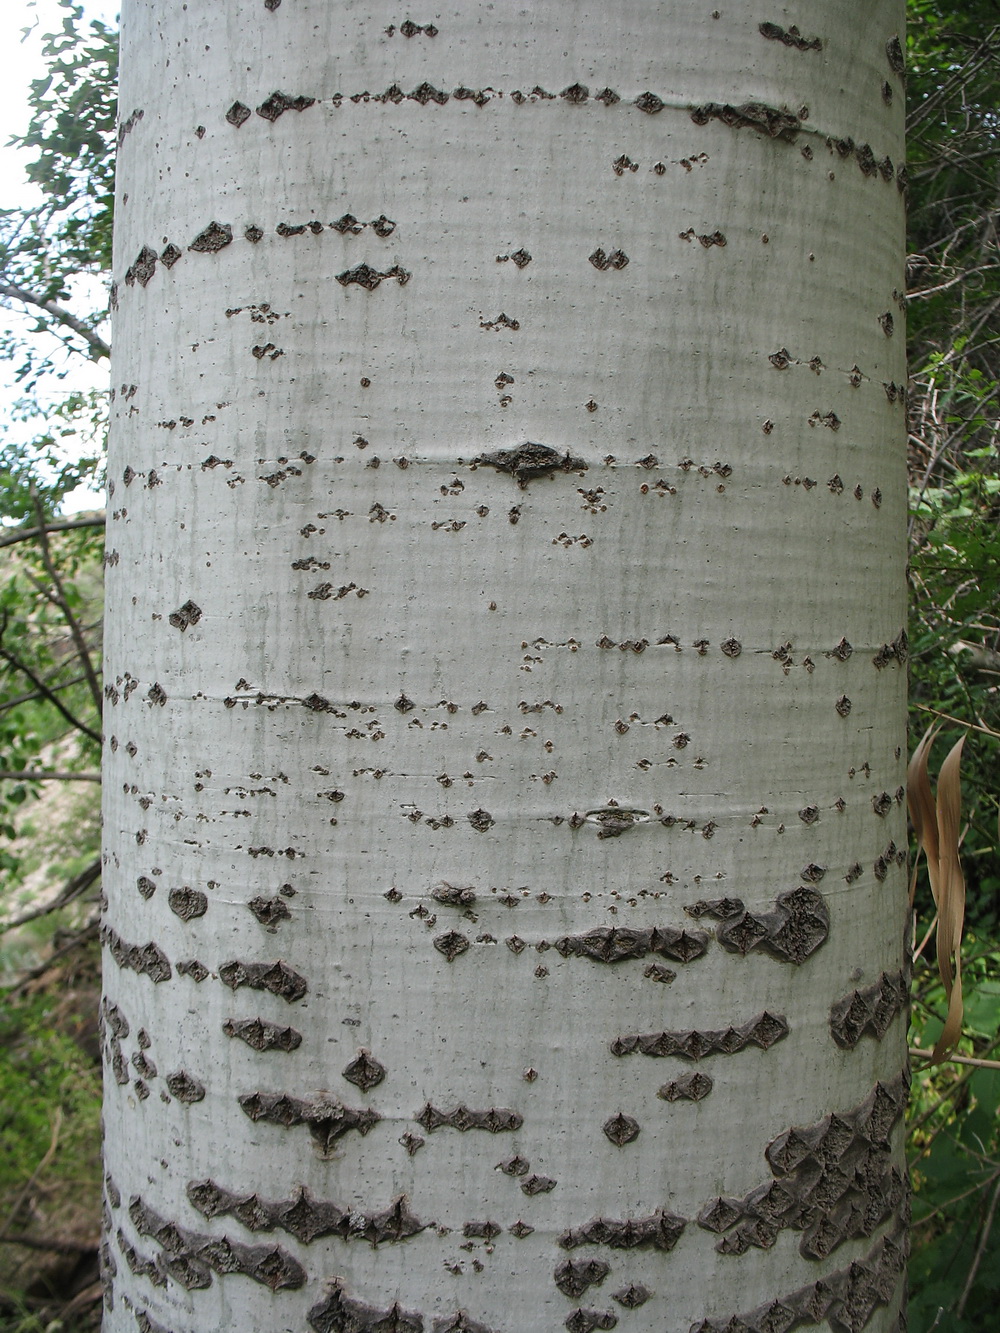 Изображение особи Populus berkarensis.